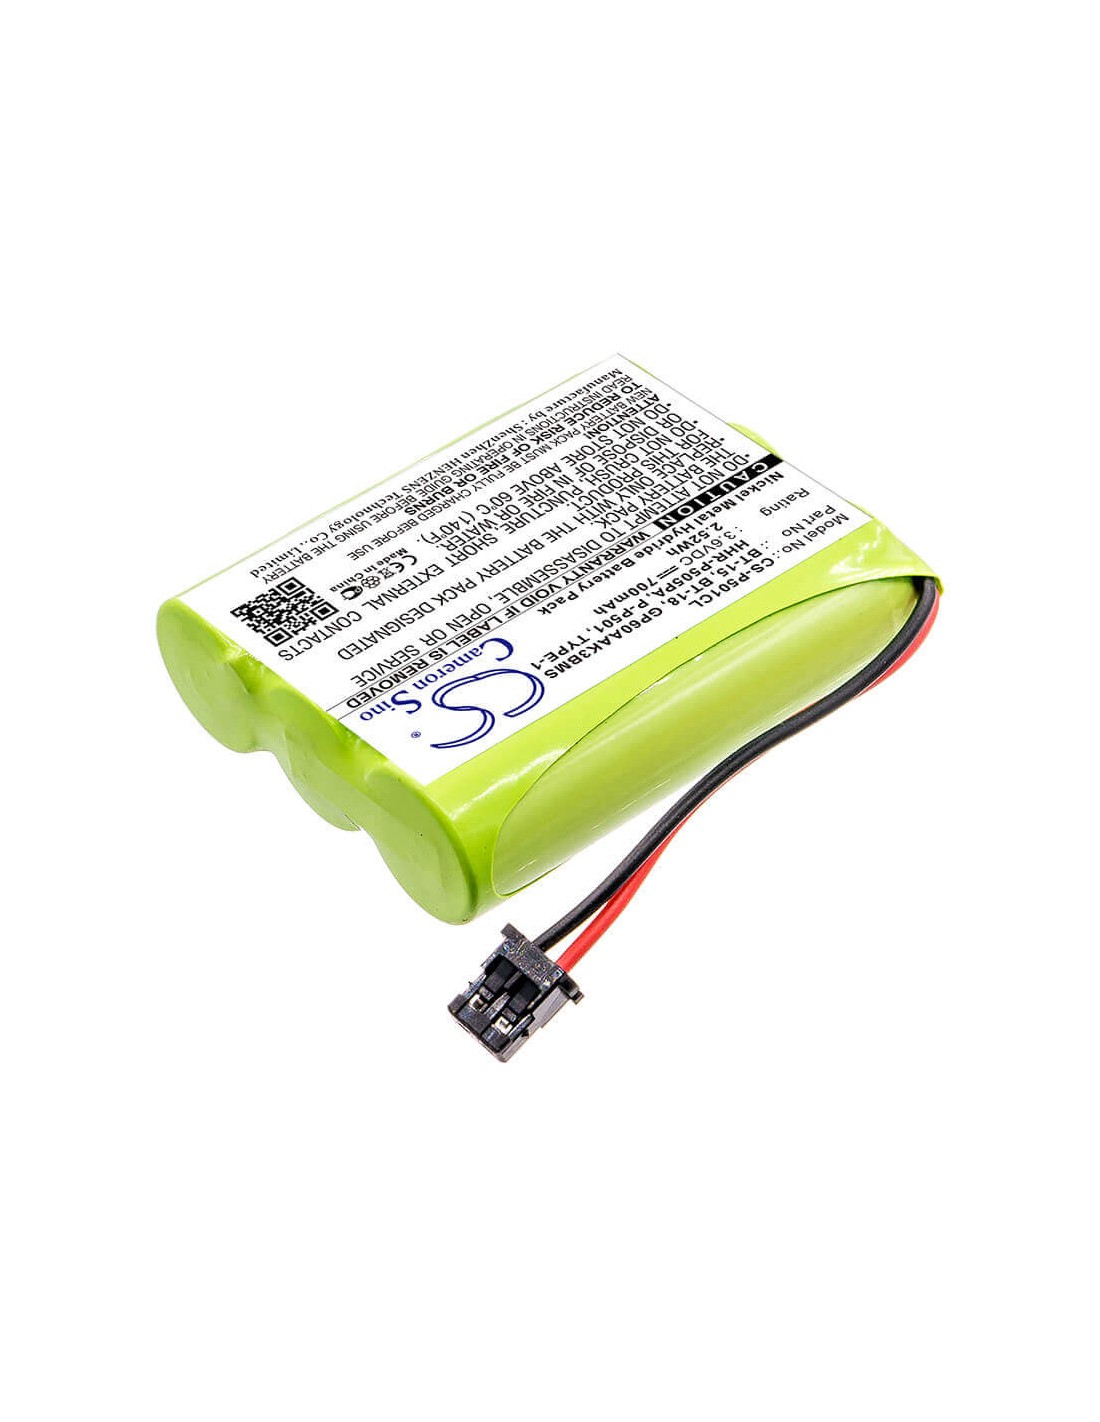 Battery for Memorex, Ybt3n800mah 3.6V, 700mAh - 2.52Wh